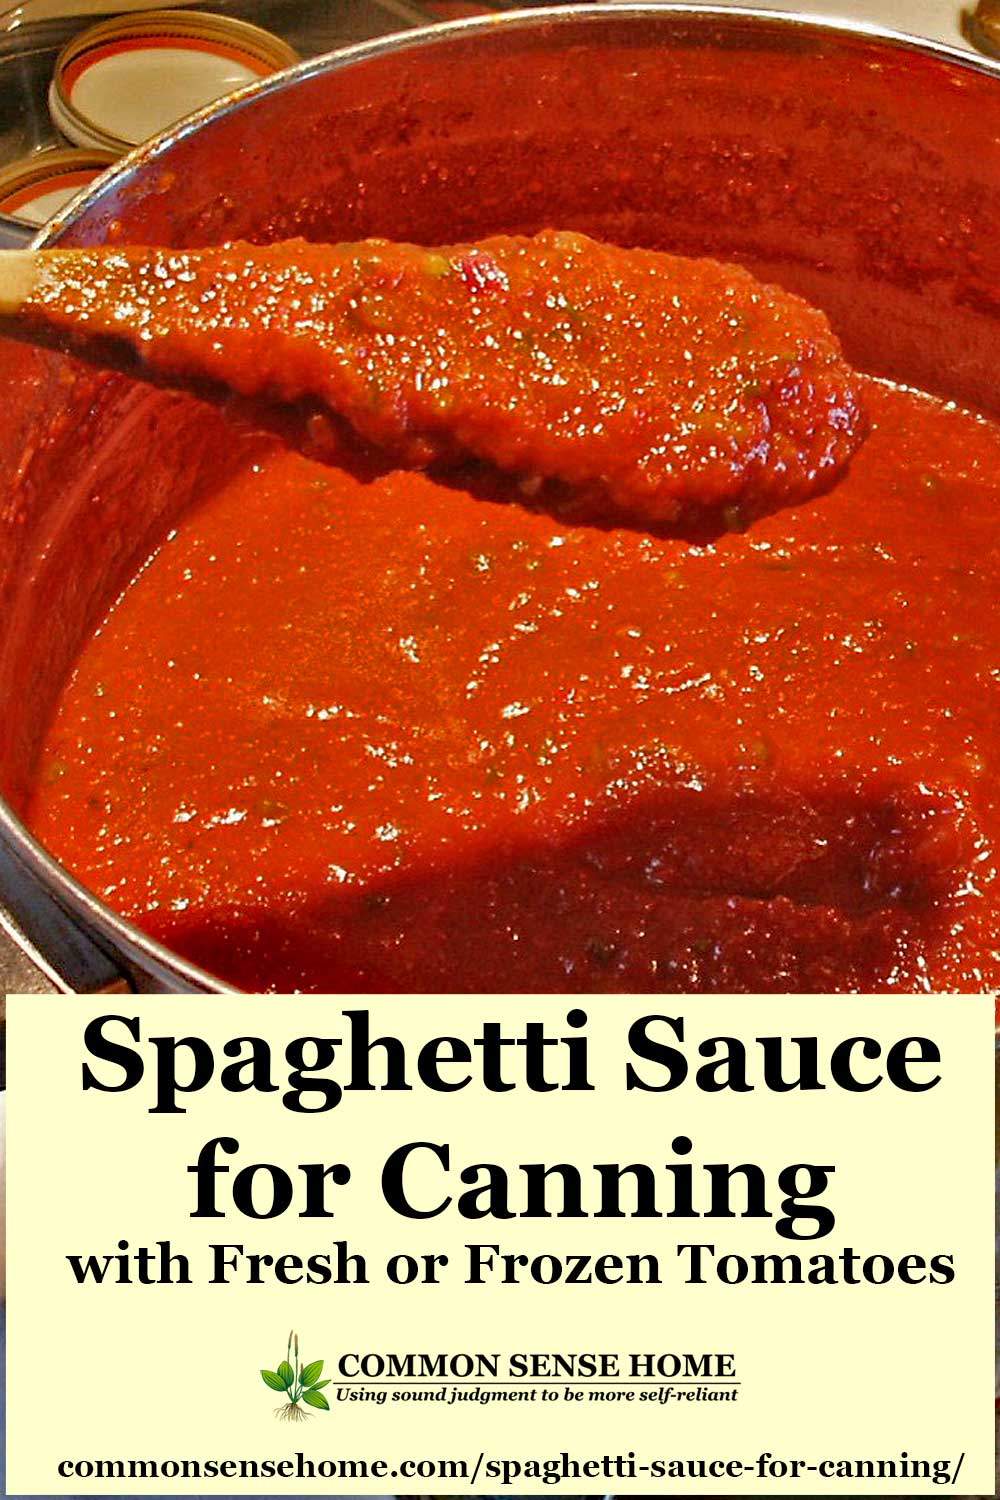 Canning Spaghetti Sauce - Canned Spaghetti Sauce Recipe